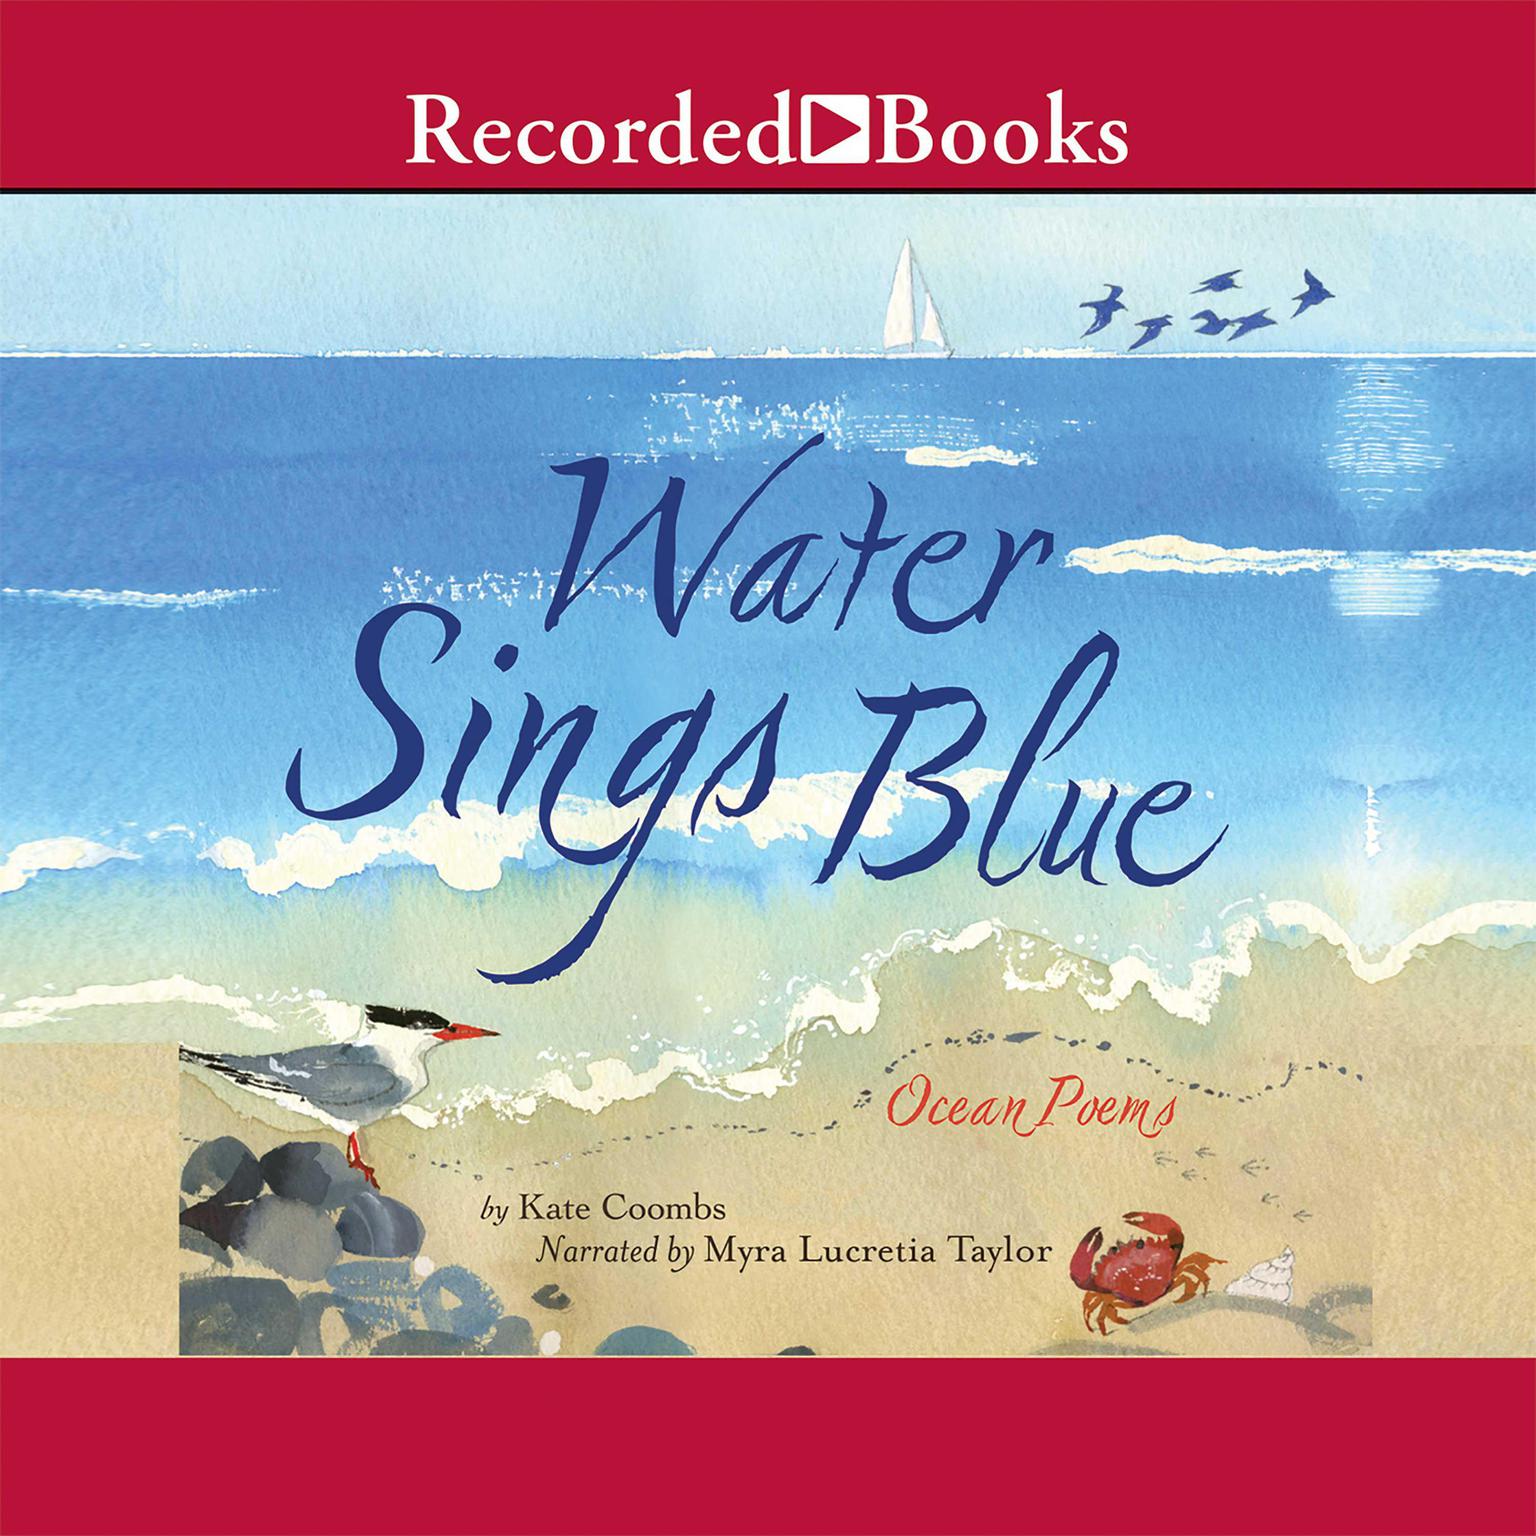 Water Sings Blue: Ocean Poems Audiobook, by Kate Coombs